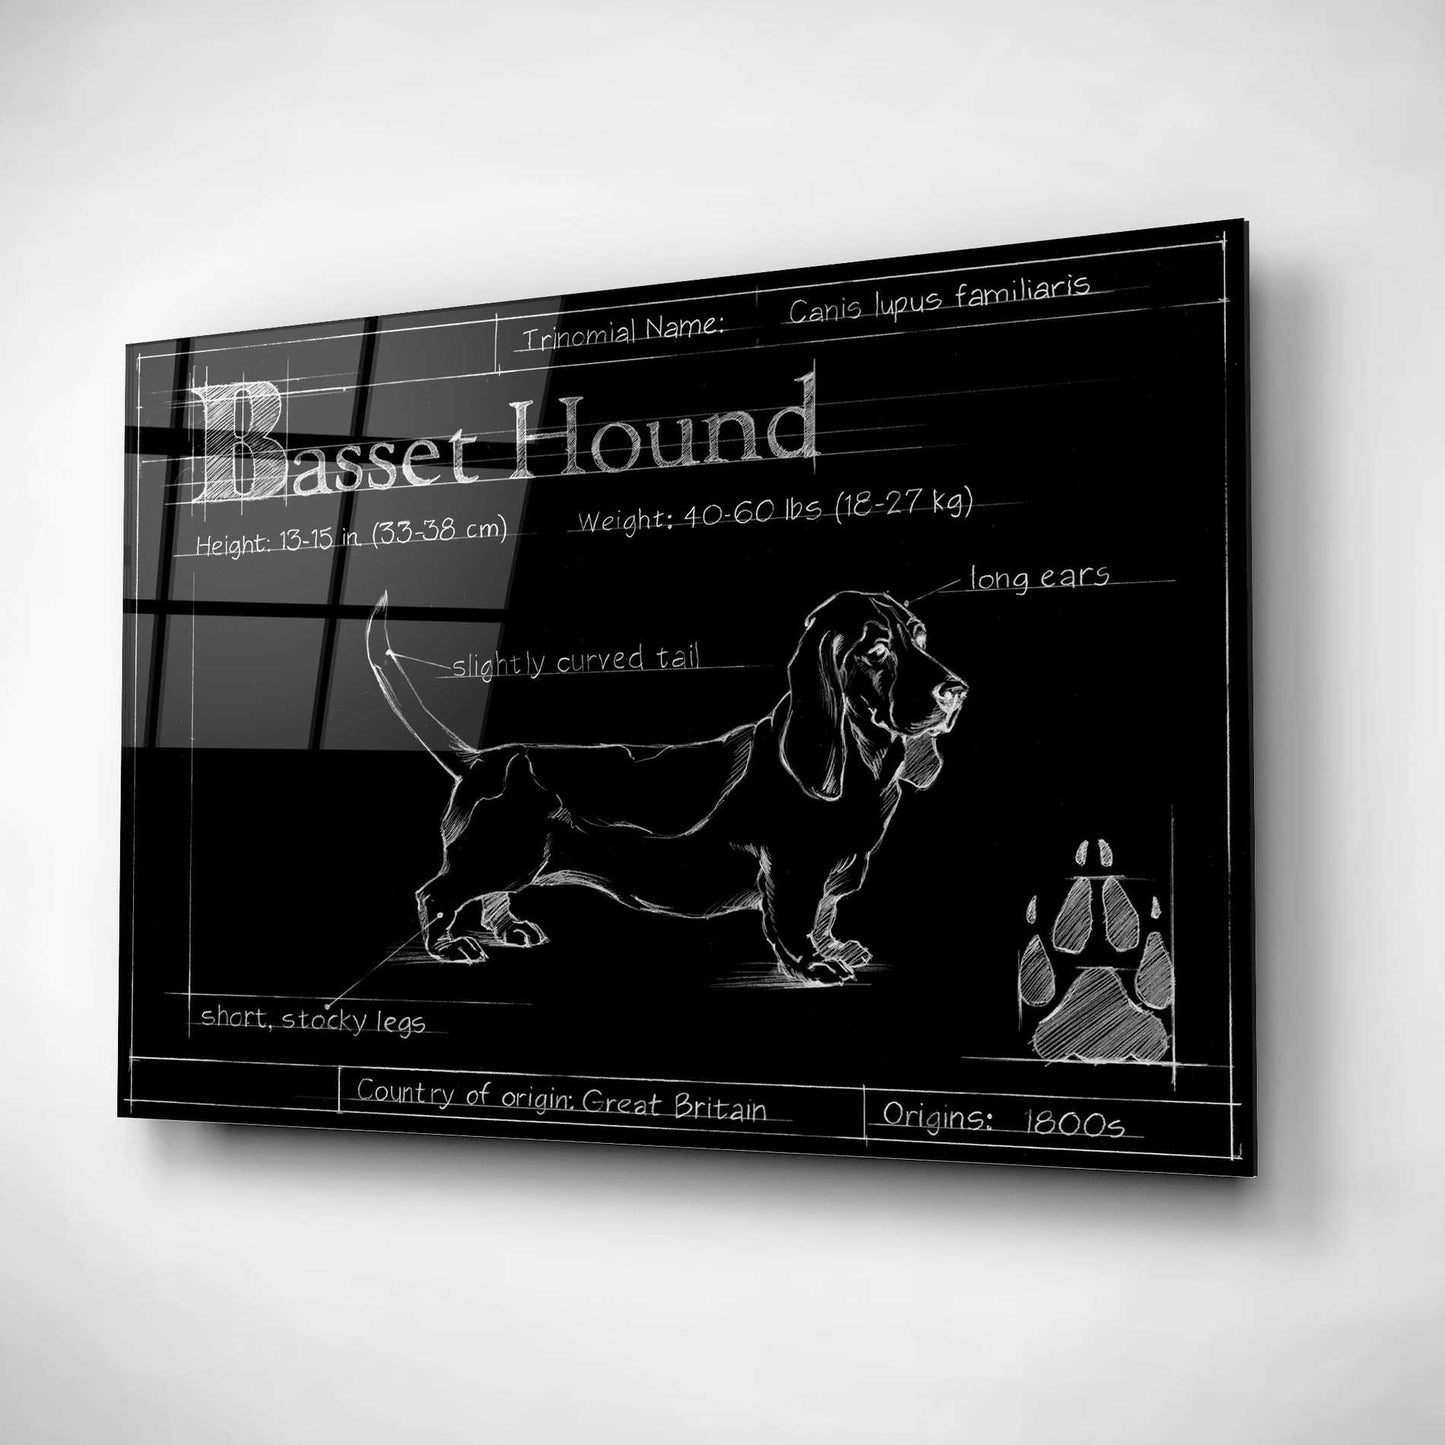 Epic Art 'Blueprint Bassett Hound' by Ethan Harper, Acrylic Glass Wall Art,16x12